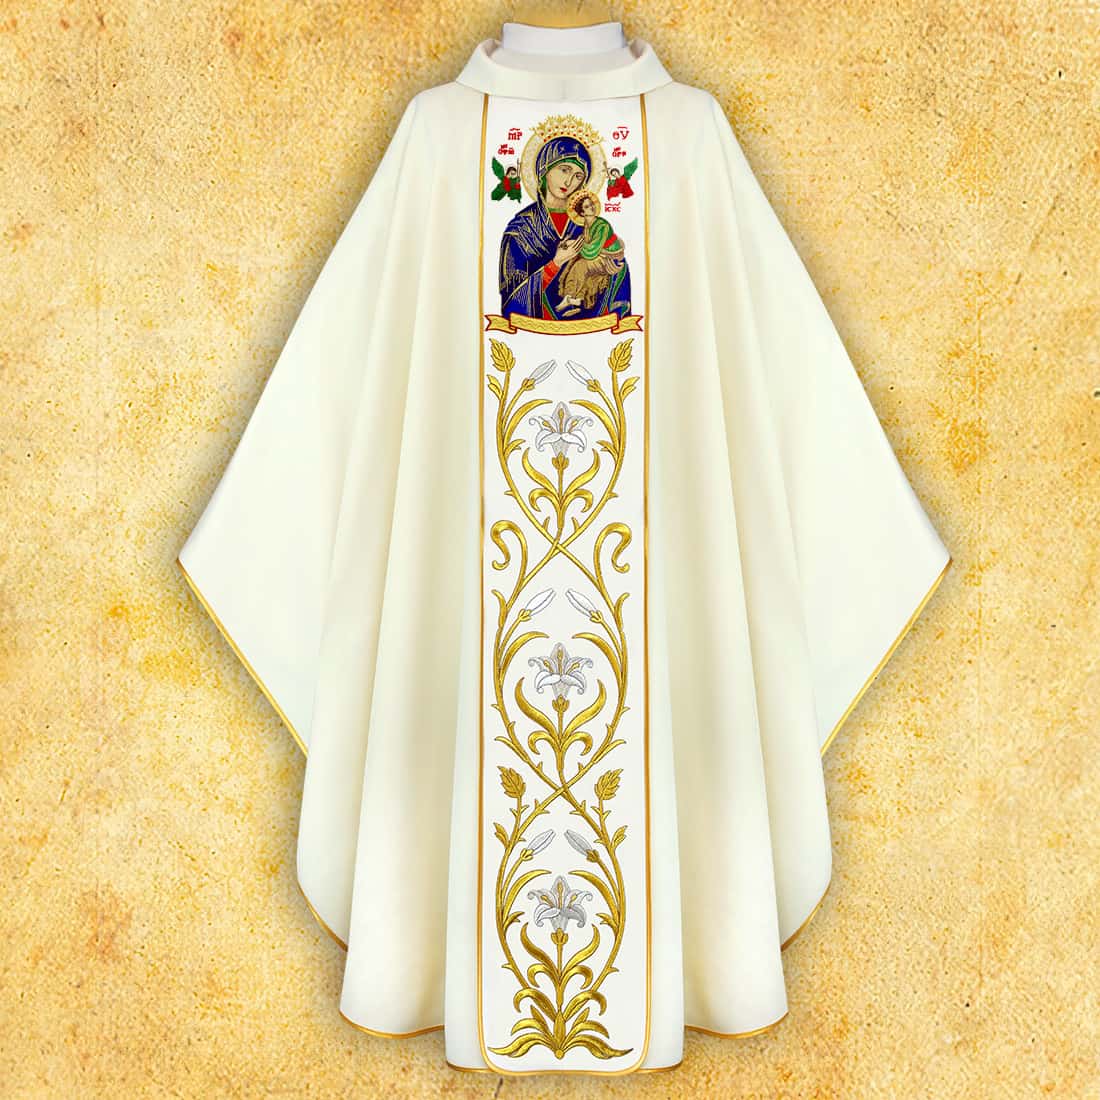 Casulla con imagen bordada de "Nuestra Señora del Perpetuo Socorro"